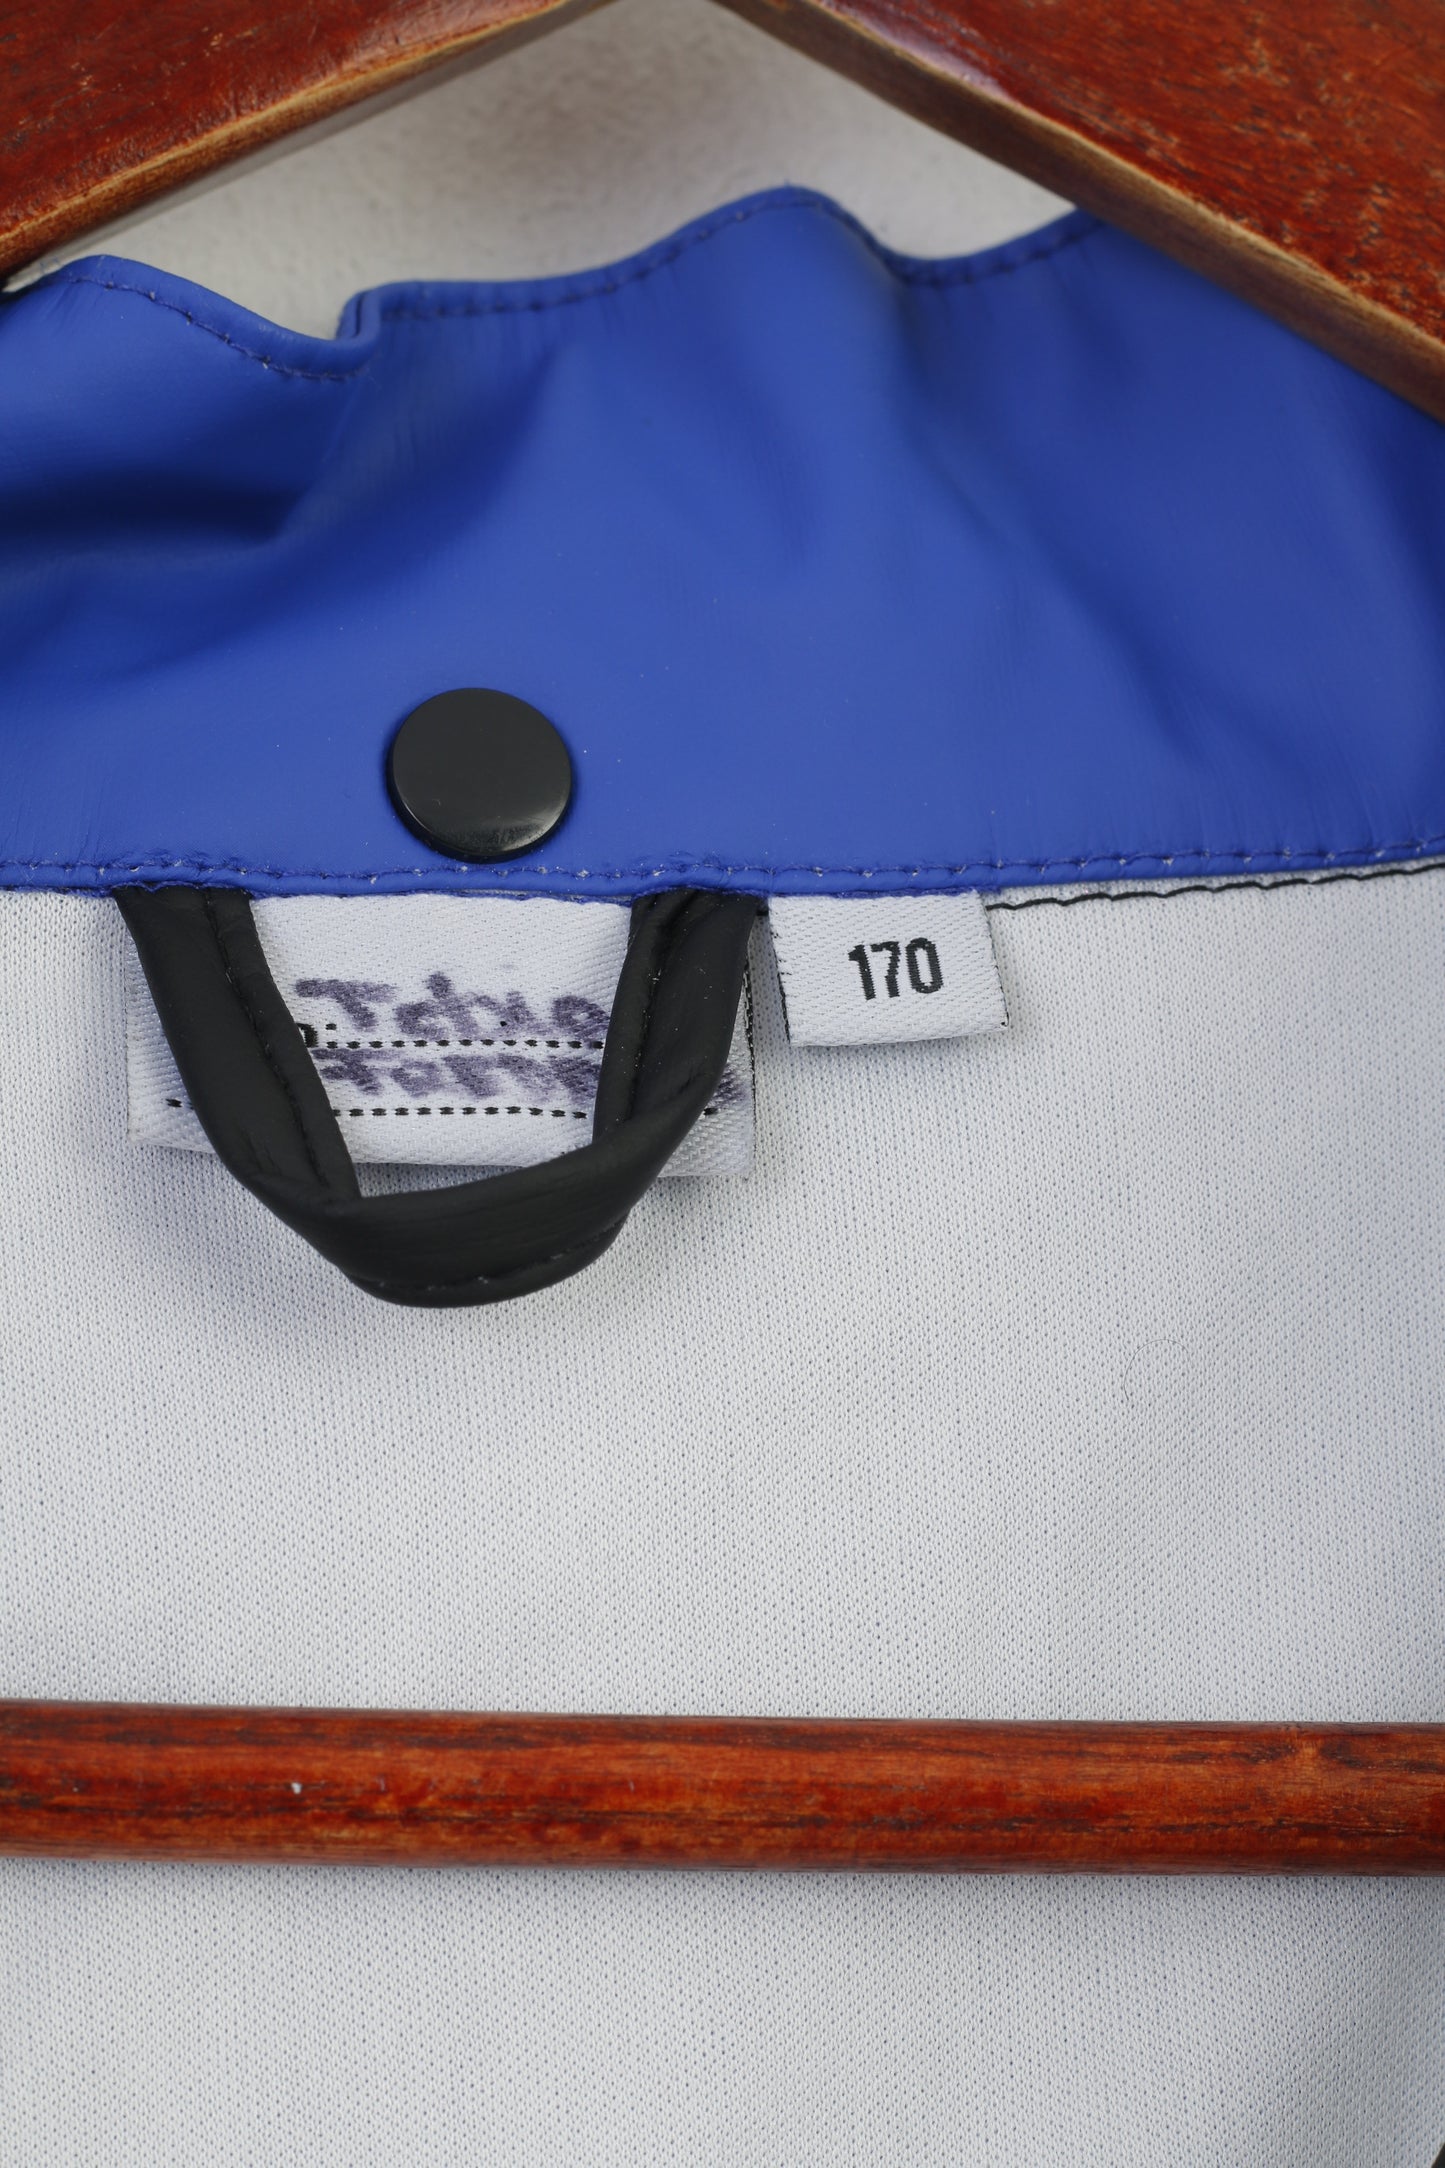 Giacca Adrenalin Boys 170 Nero Blu Cerniera completa Tasche esterne con cappuccio Top vintage riflettente impermeabile